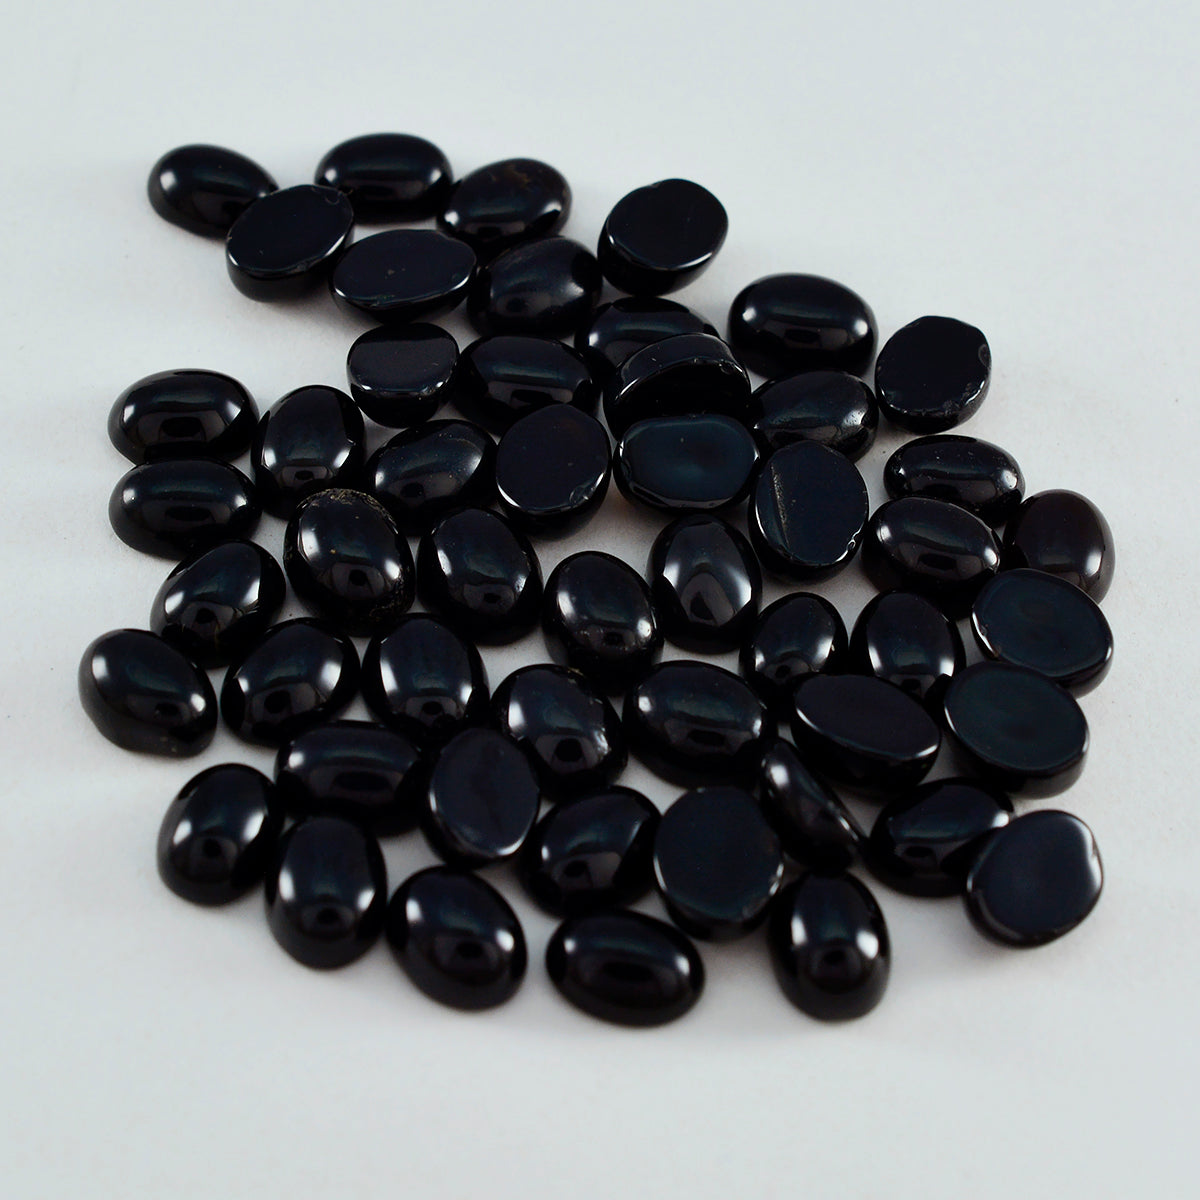 Riyogems 1pc cabochon onyx noir 3x5 mm forme ovale belle pierre précieuse de qualité